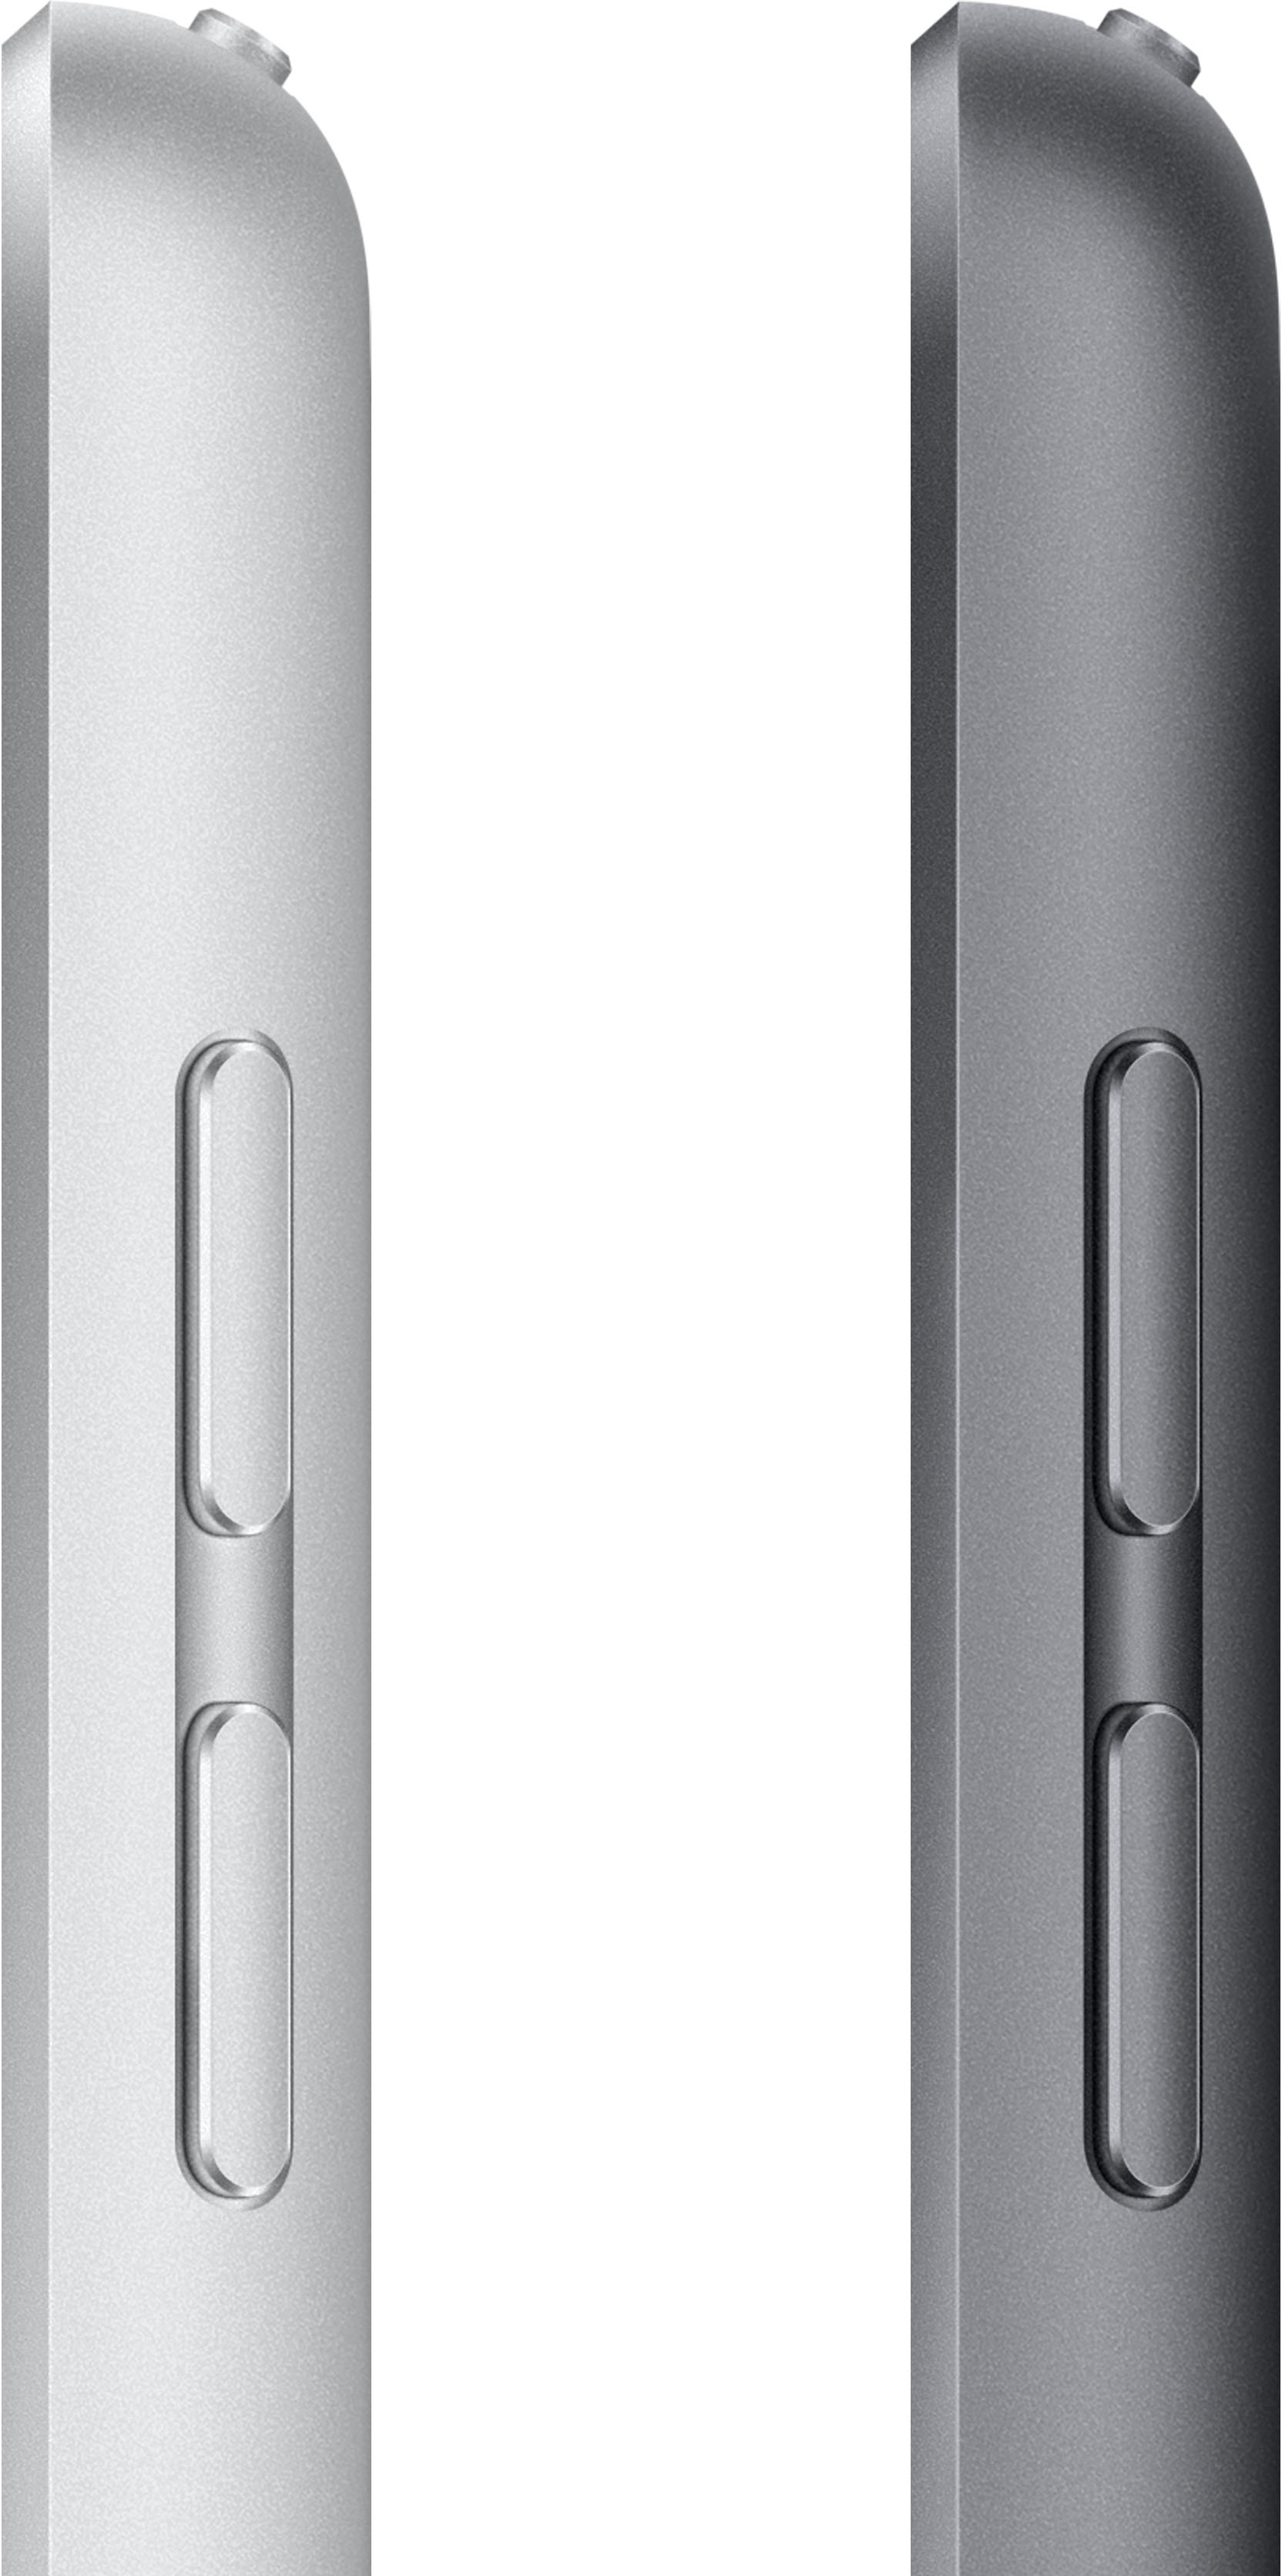 Apple 10.2-Inch iPad (9th Generation) with Wi-Fi + Cellular 64GB Silver  (Unlocked) MK673LL/A - Best Buy